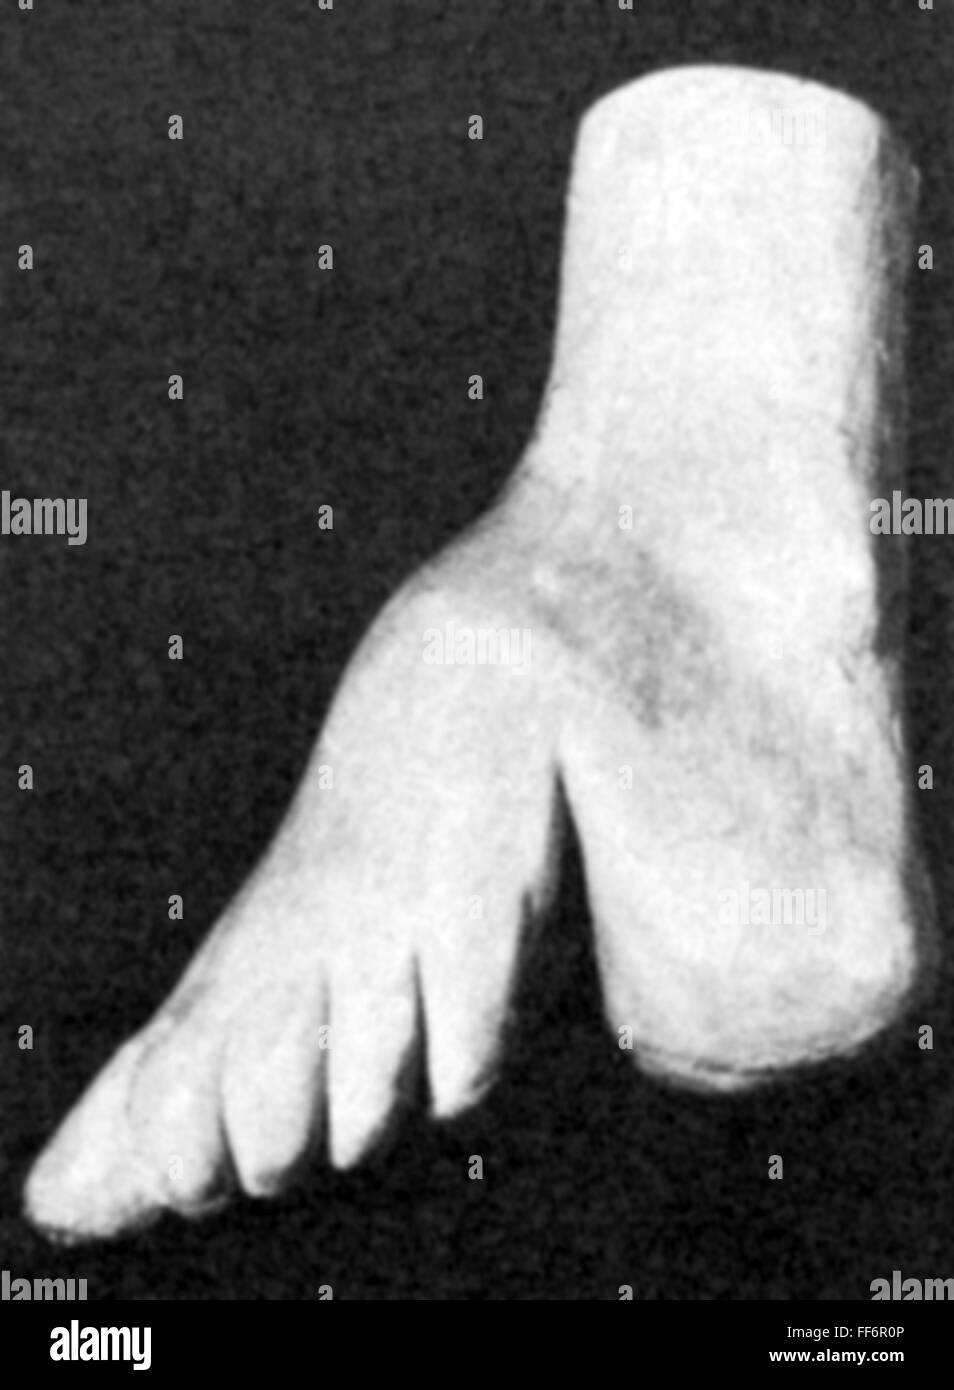 Medizin, Anatomie, Skelett / Knochen, Deformation eines chinesischen gebundenen Fußes, Modell, aus: 'Ärztliche Praxis', Band XL, Nummer 19, 5.3.1988, Additional-Rights-Clearences-not available Stockfoto